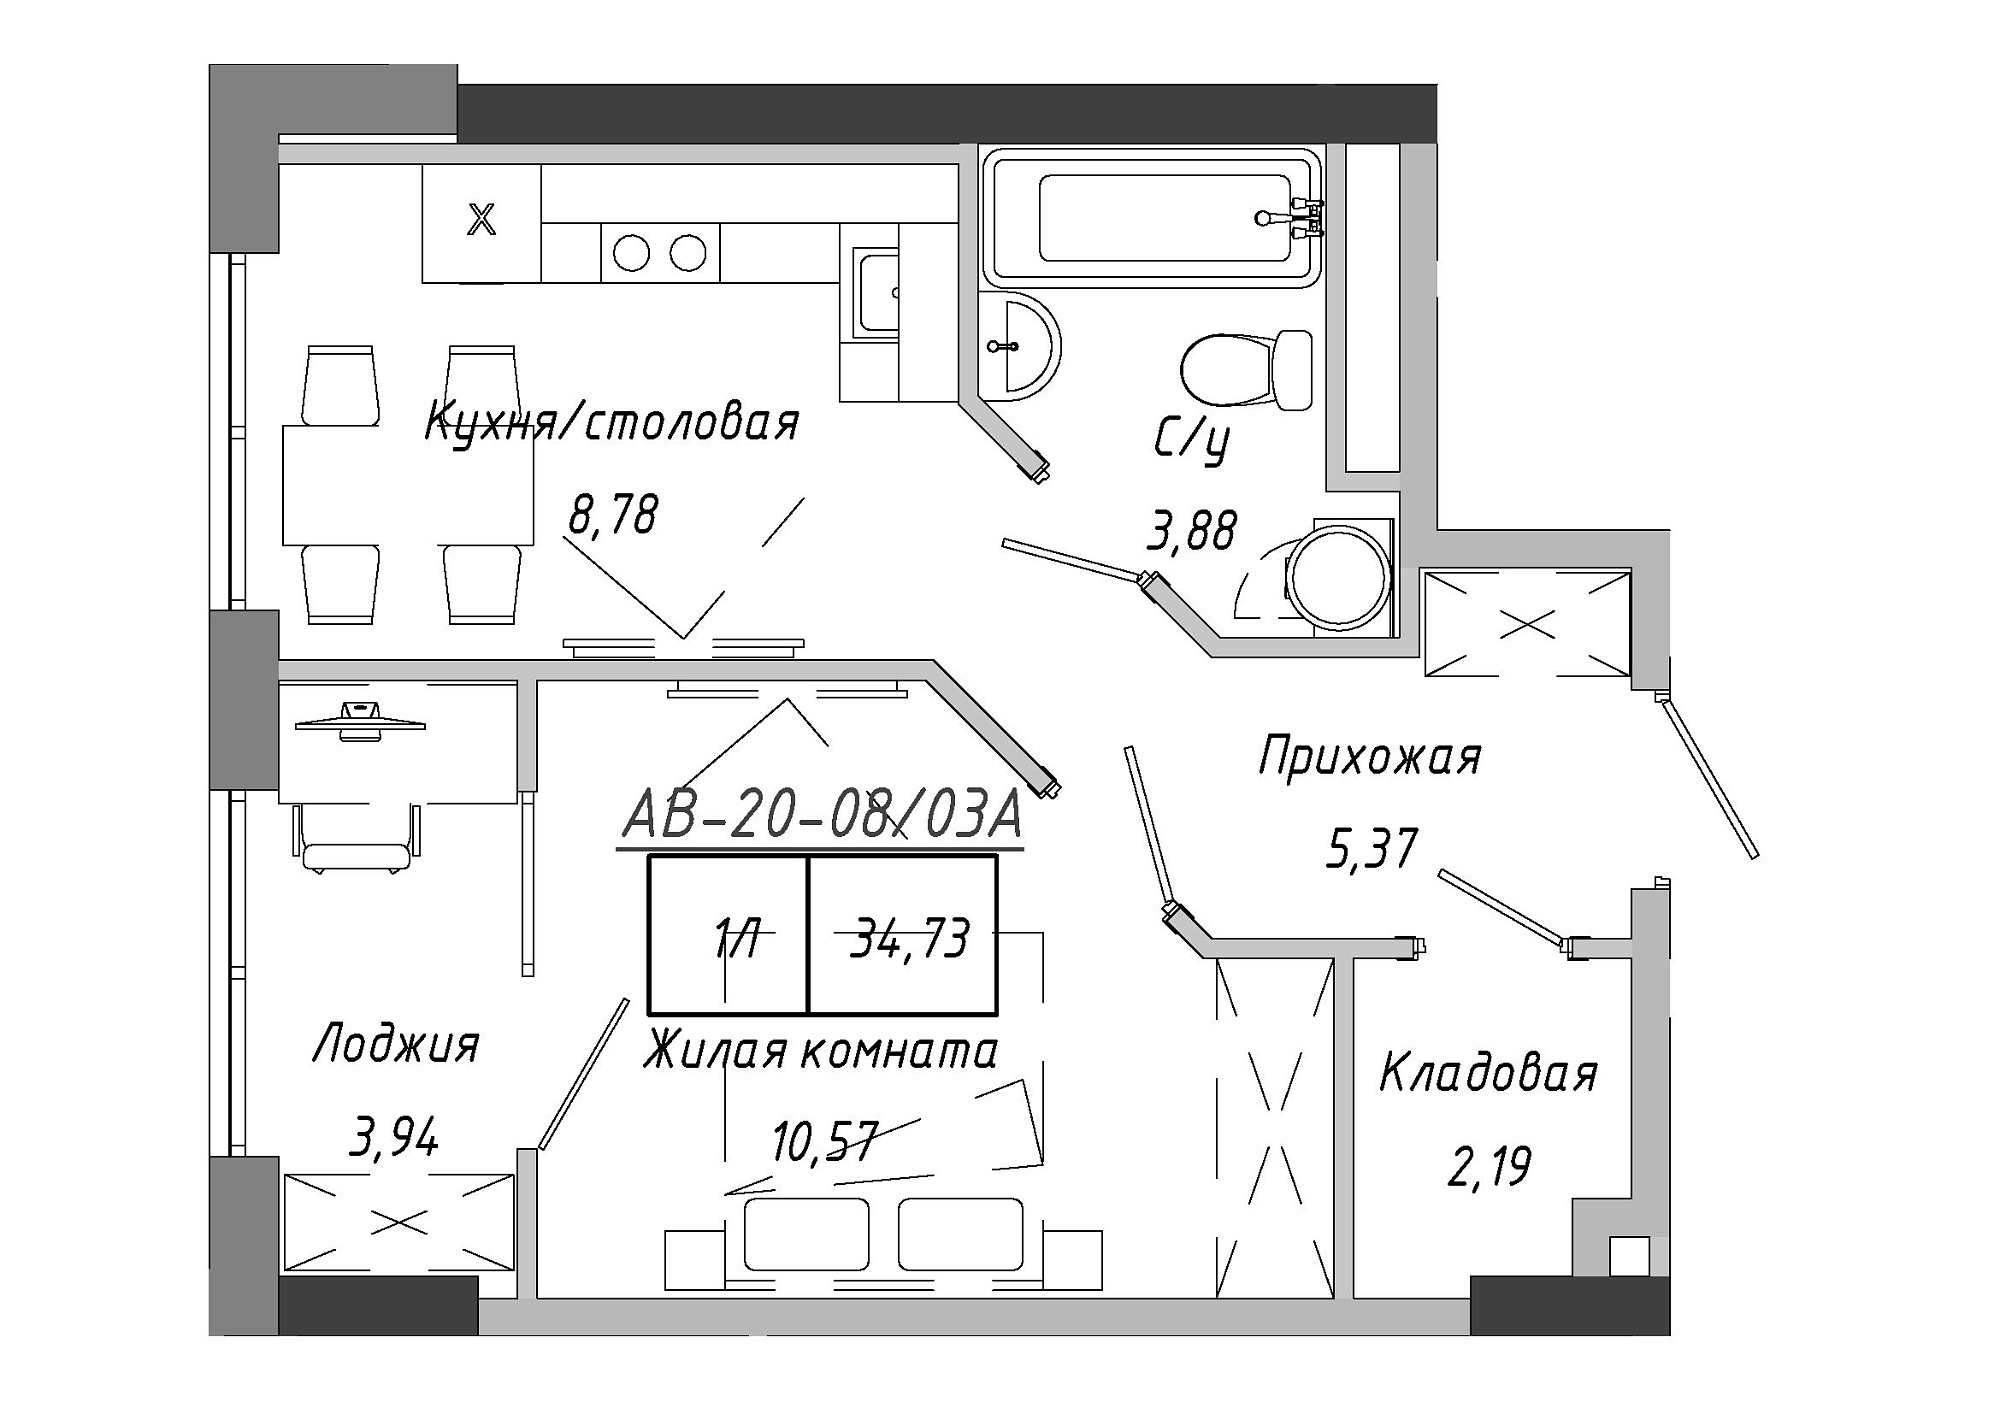 Планування 1-к квартира площею 35.26м2, AB-20-08/0003а.